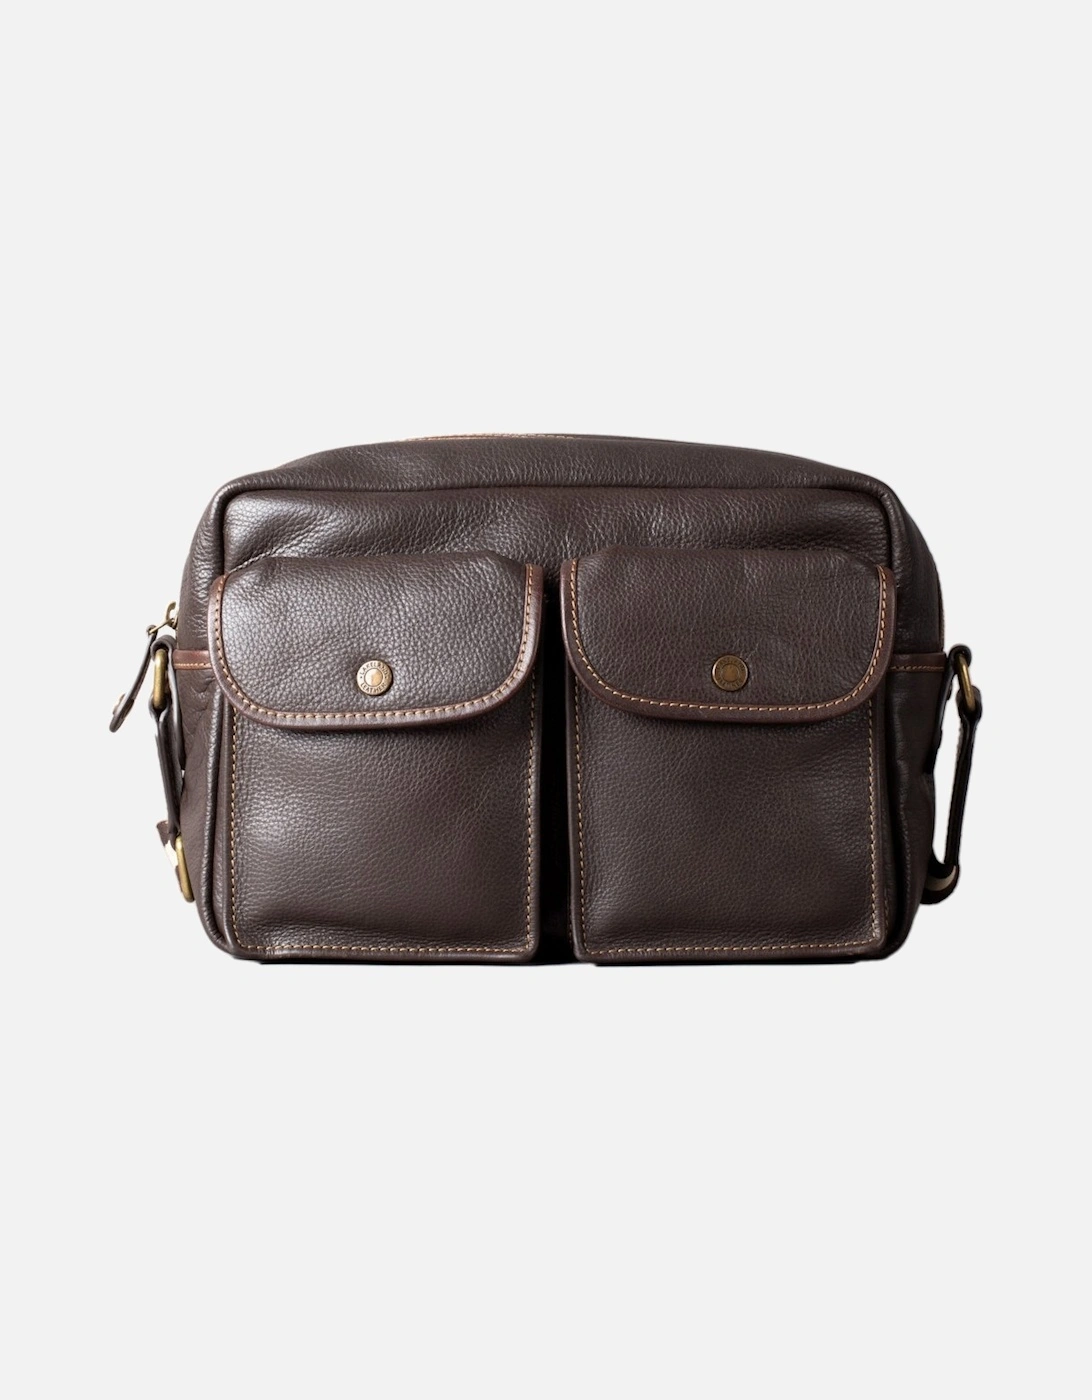 Kelsick Leather Messenger Bag, 6 of 5